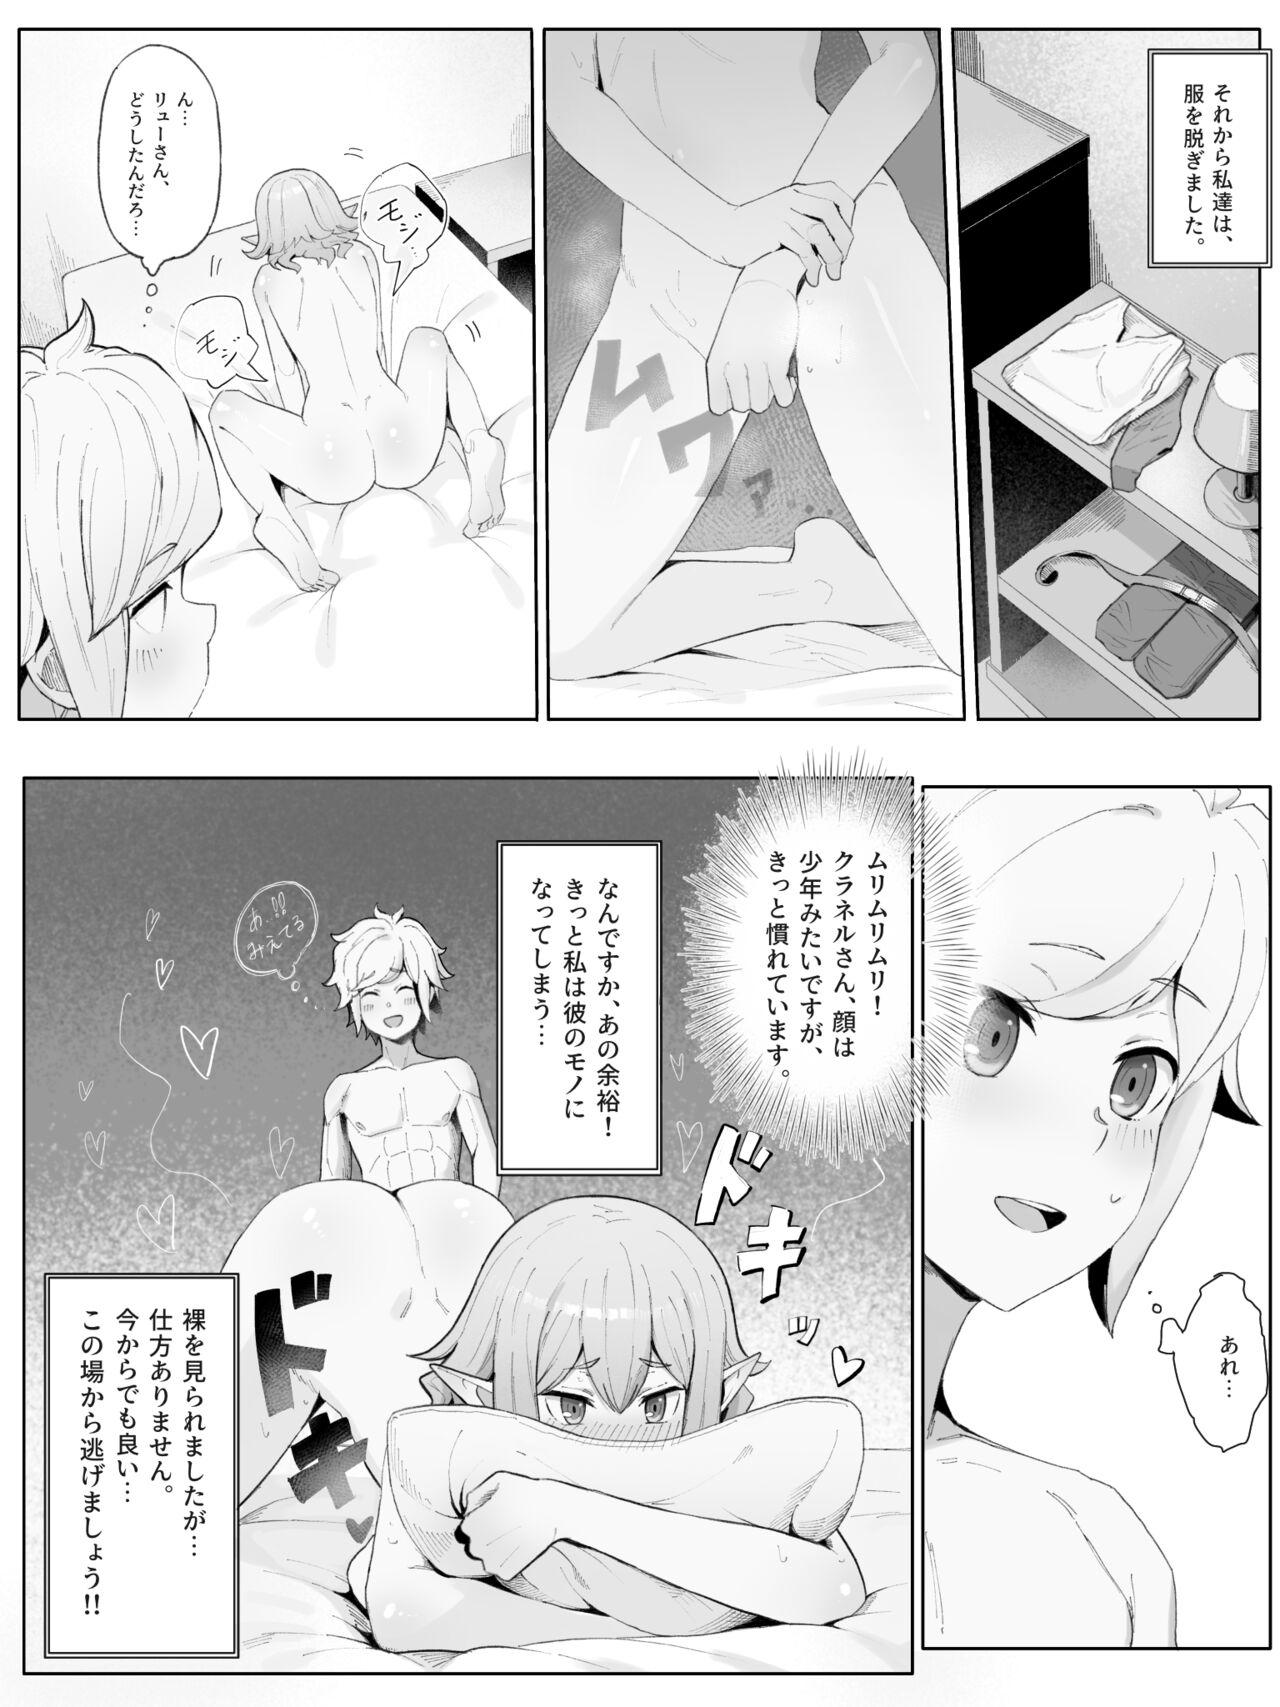 Bhabhi Bell Ryuu Ecchi na Manga - Dungeon ni deai o motomeru no wa machigatteiru darou ka Thick - Page 9